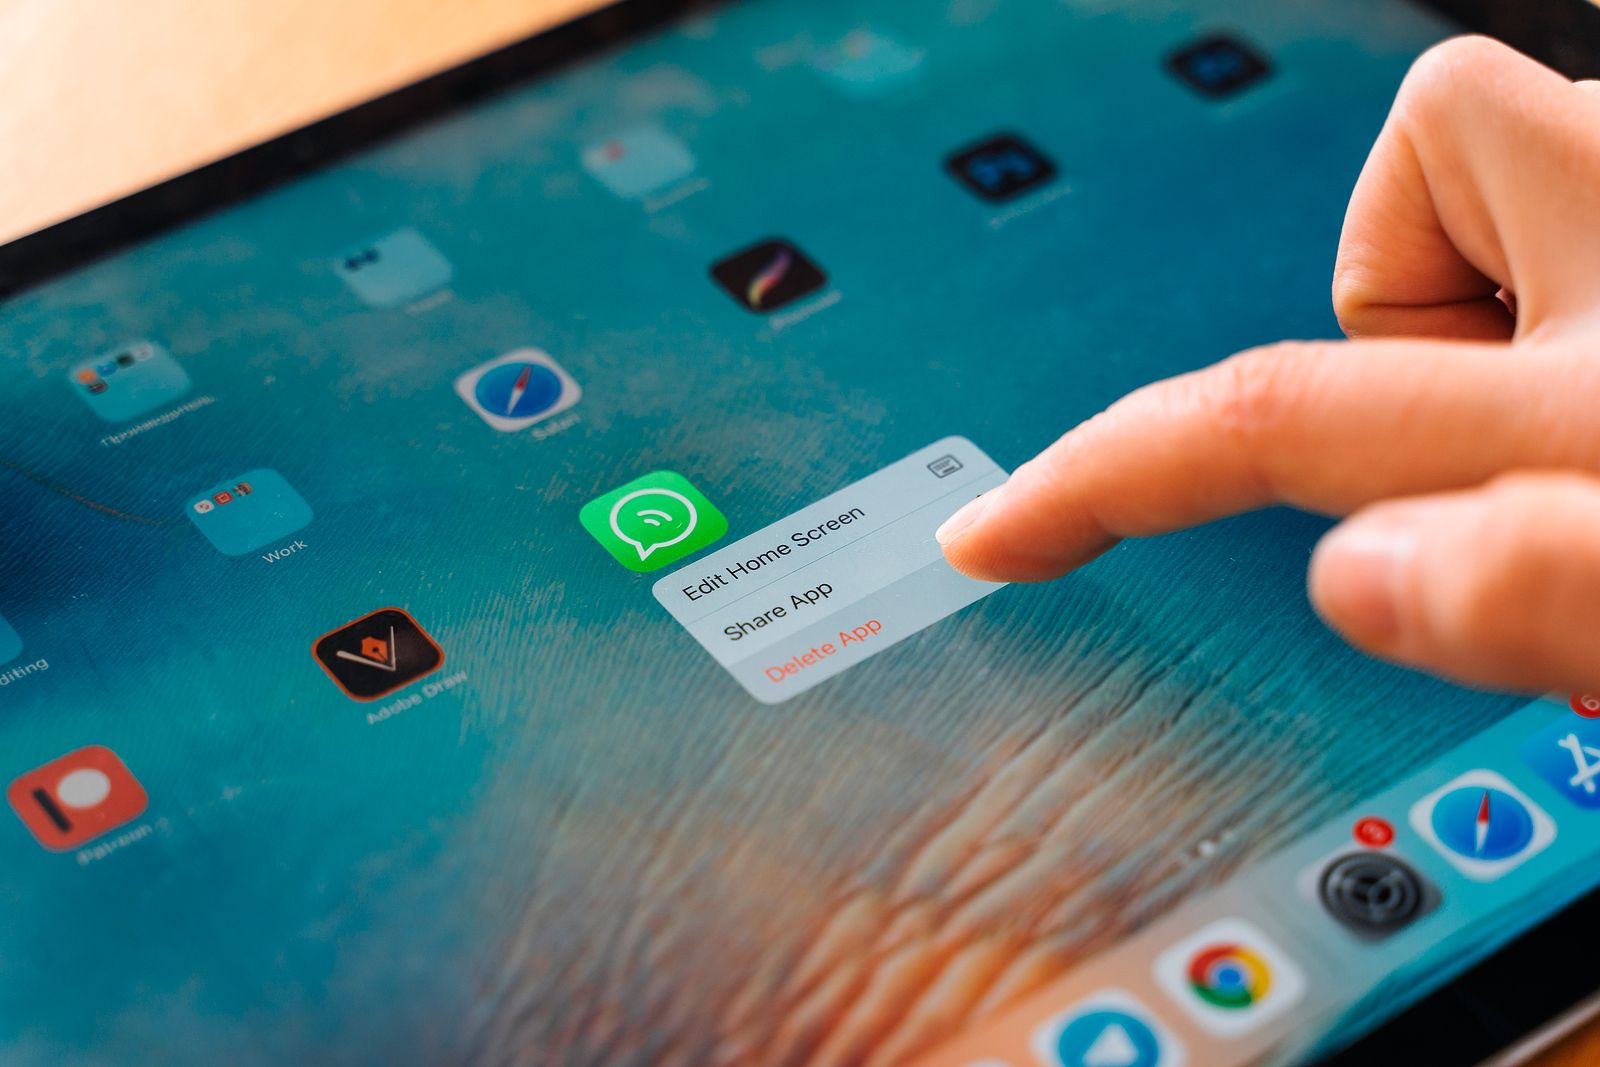 Cuidado con este supuesto mensaje de WhatsApp para que hagas una copia de seguridad descargarás un troyano en tu dispositivo (Foto Bigstock) 2